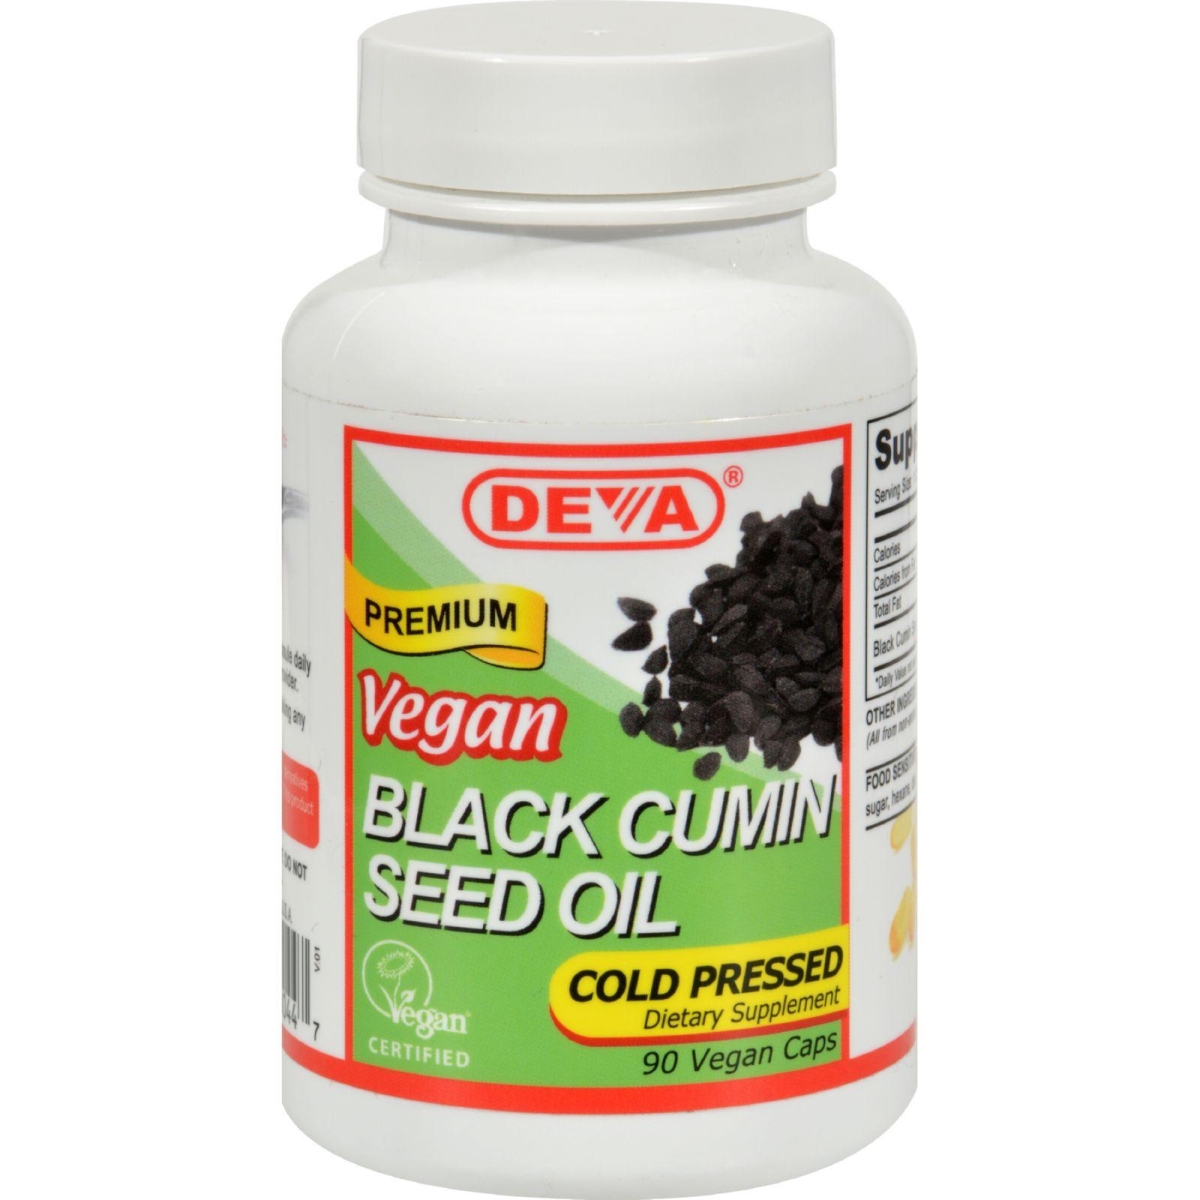 Hg1516533 Black Cumin Seed Oil, 90 Vegetarian Capsules